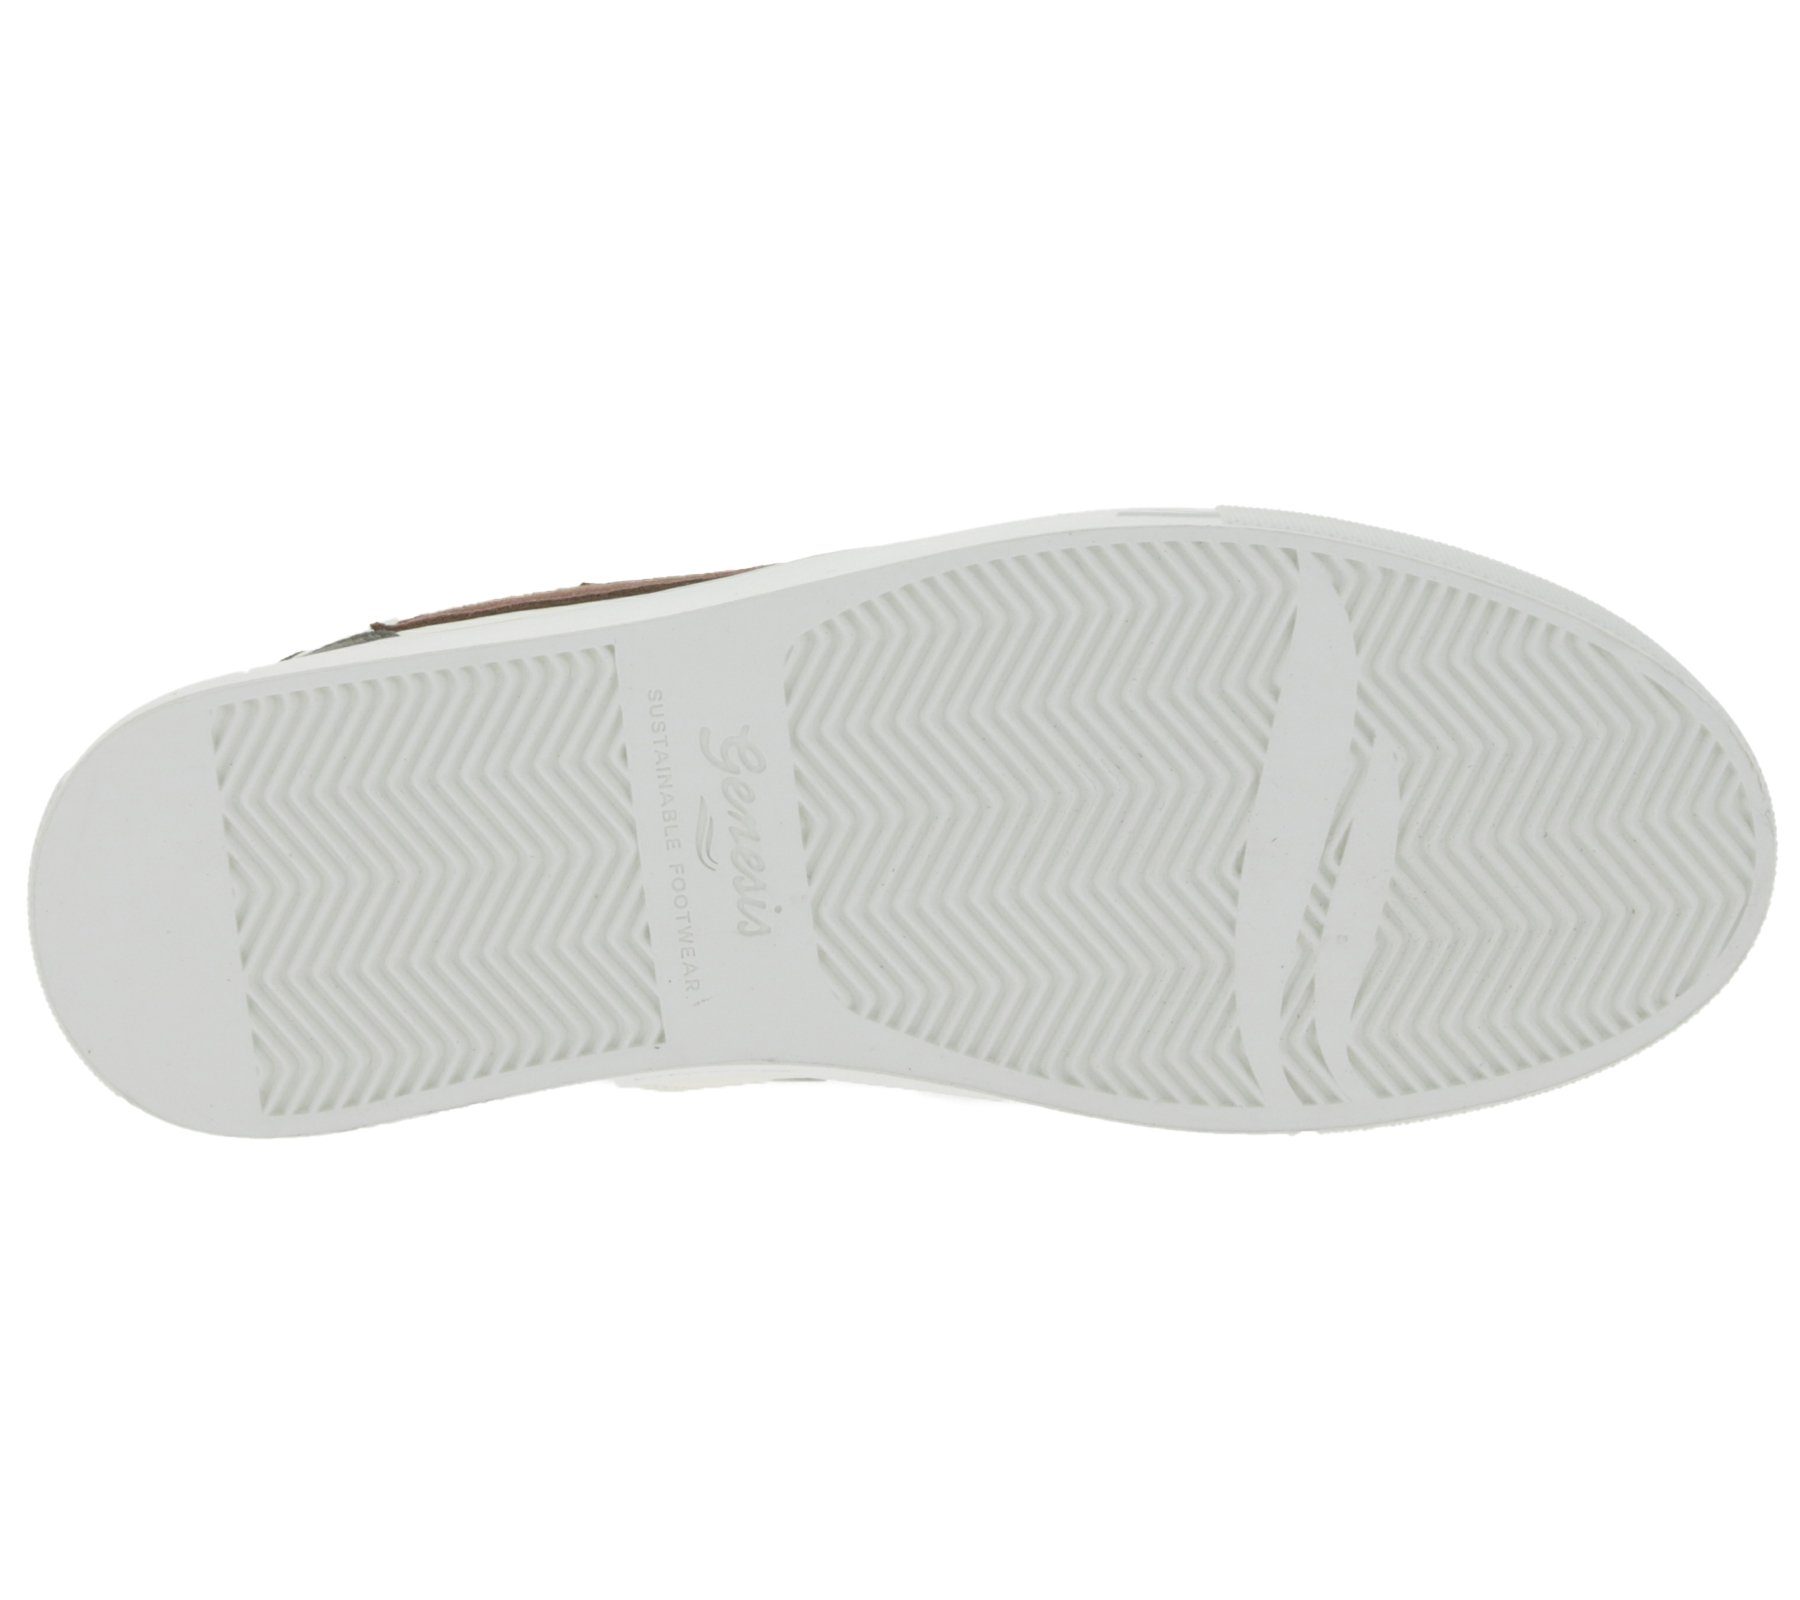 GENESIS Genesis G-Soley Damen Skater-Schuhe Weiß/Bordeaux 1004238 Sneaker Freizeit-Schuhe Sneaker Low Top Echtleder